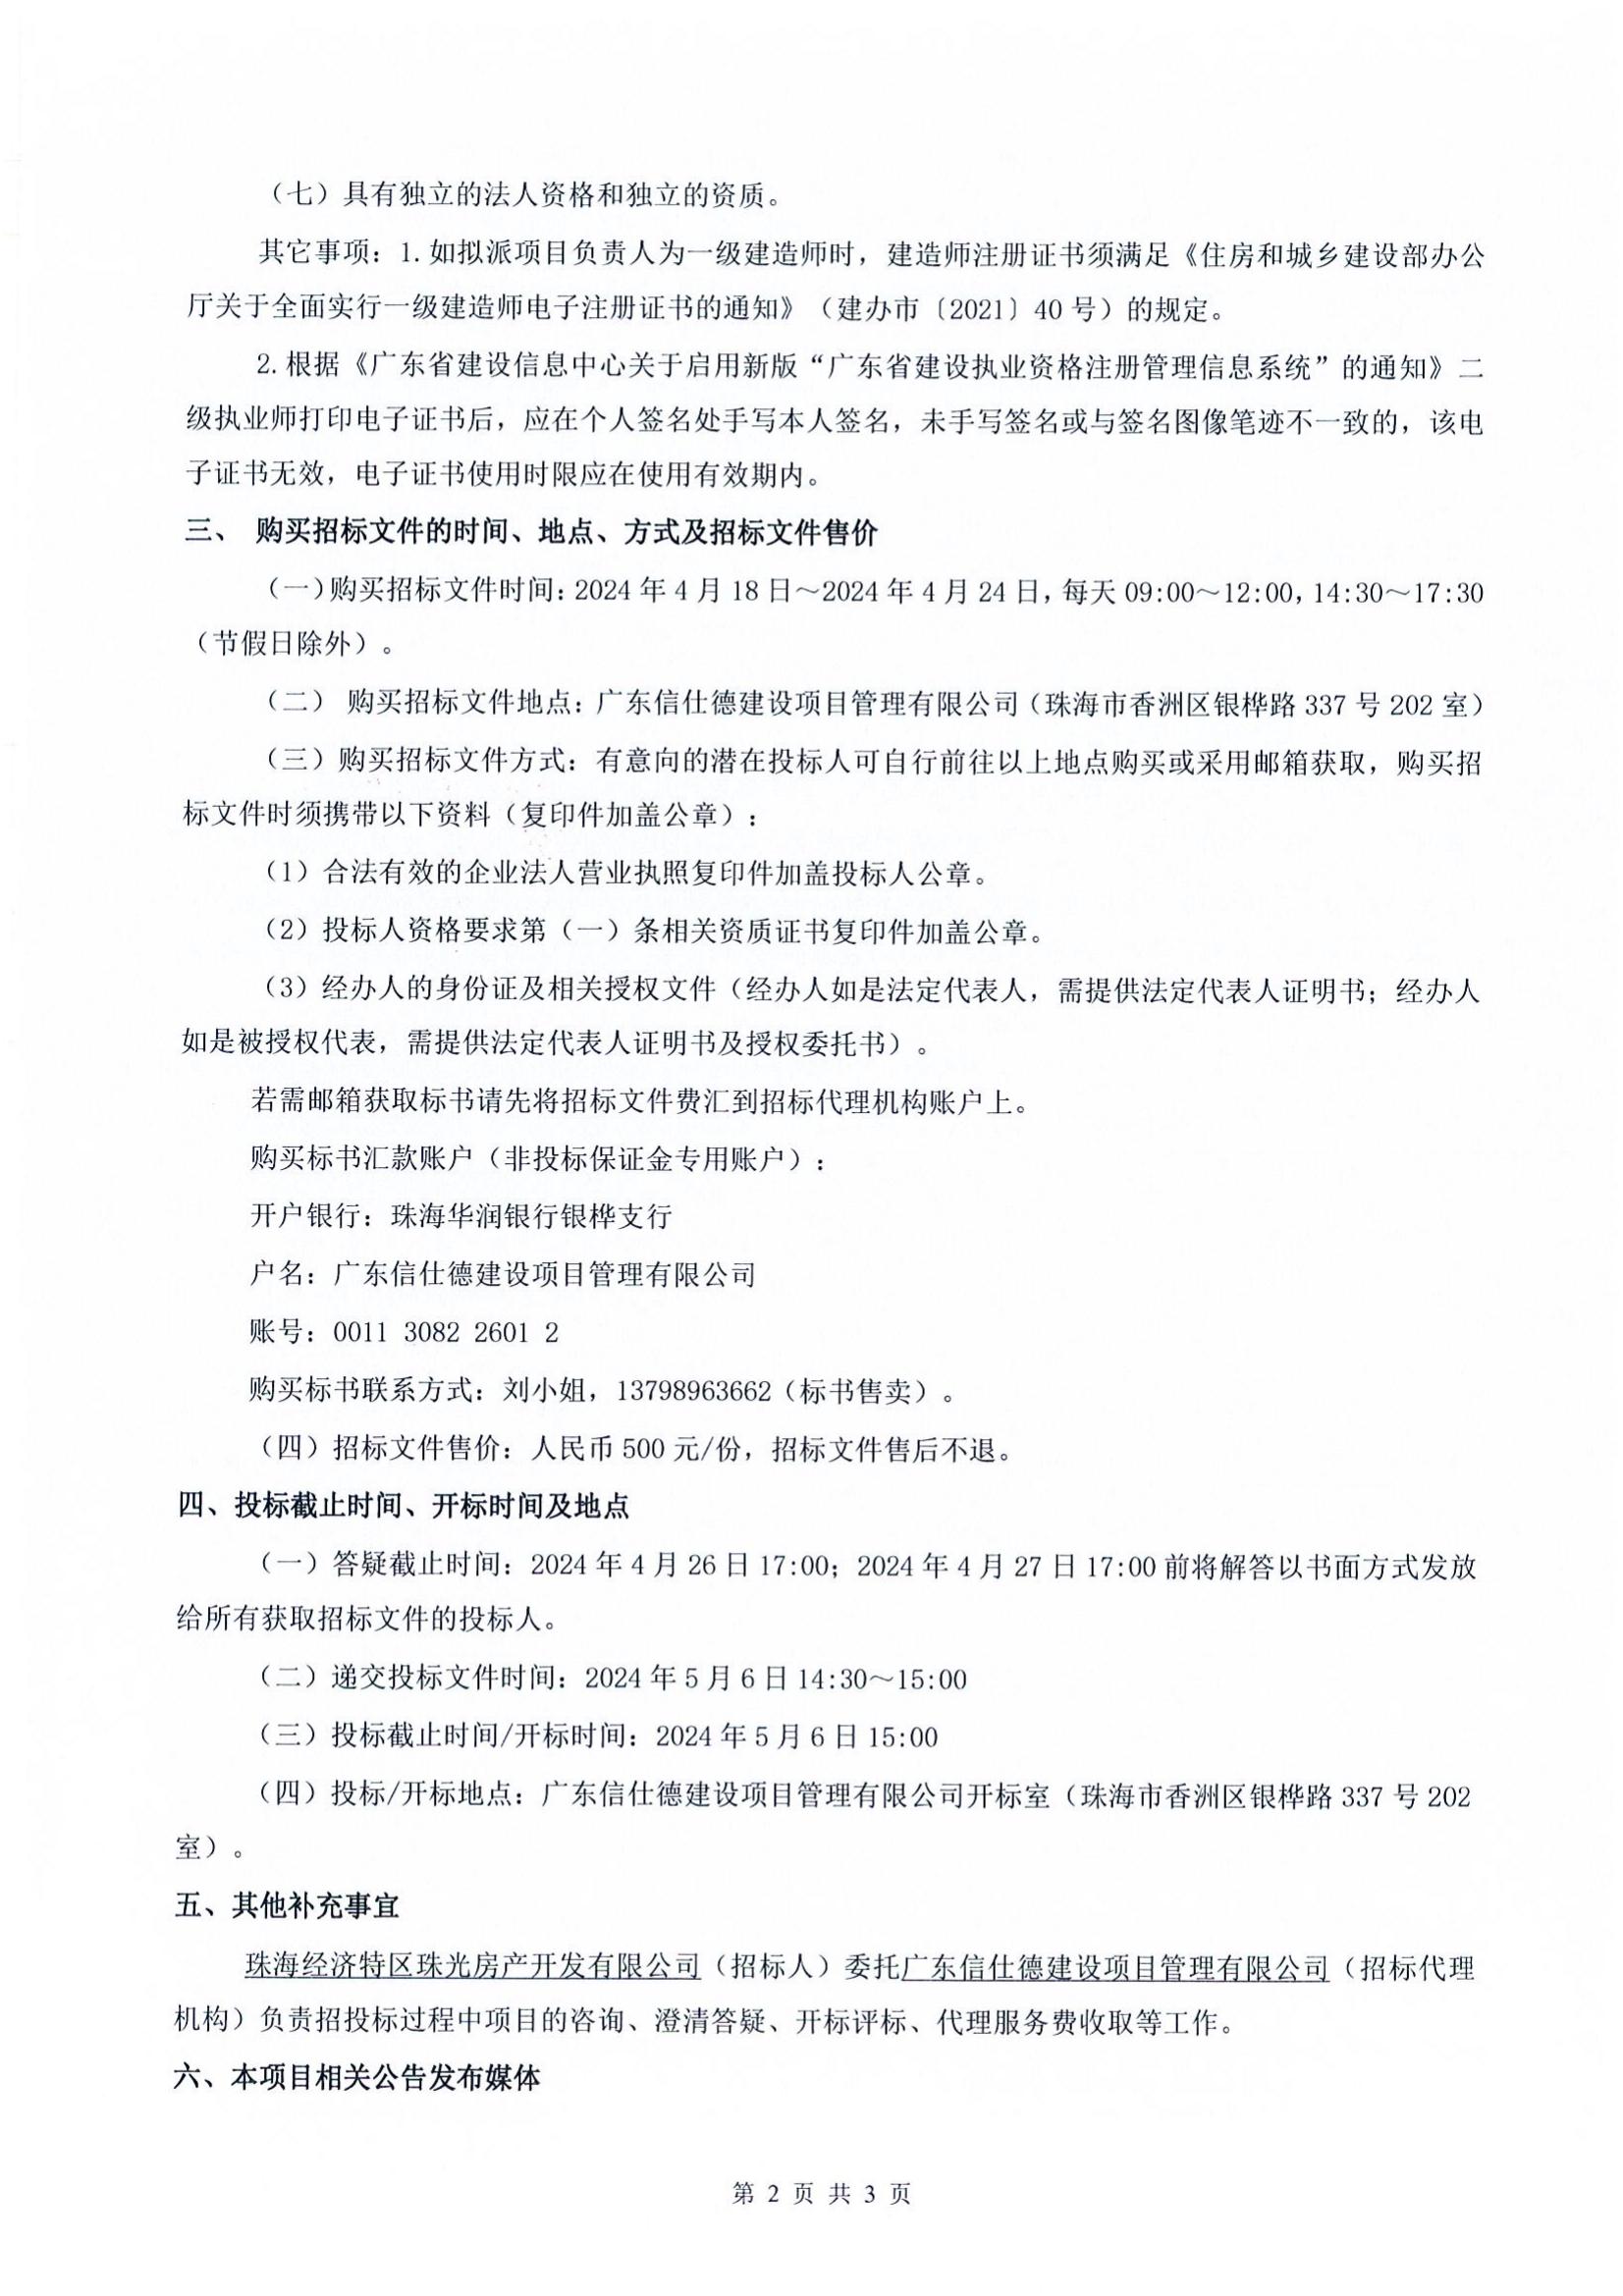 珠光前程华园项目供水工程招标公告(1)_01